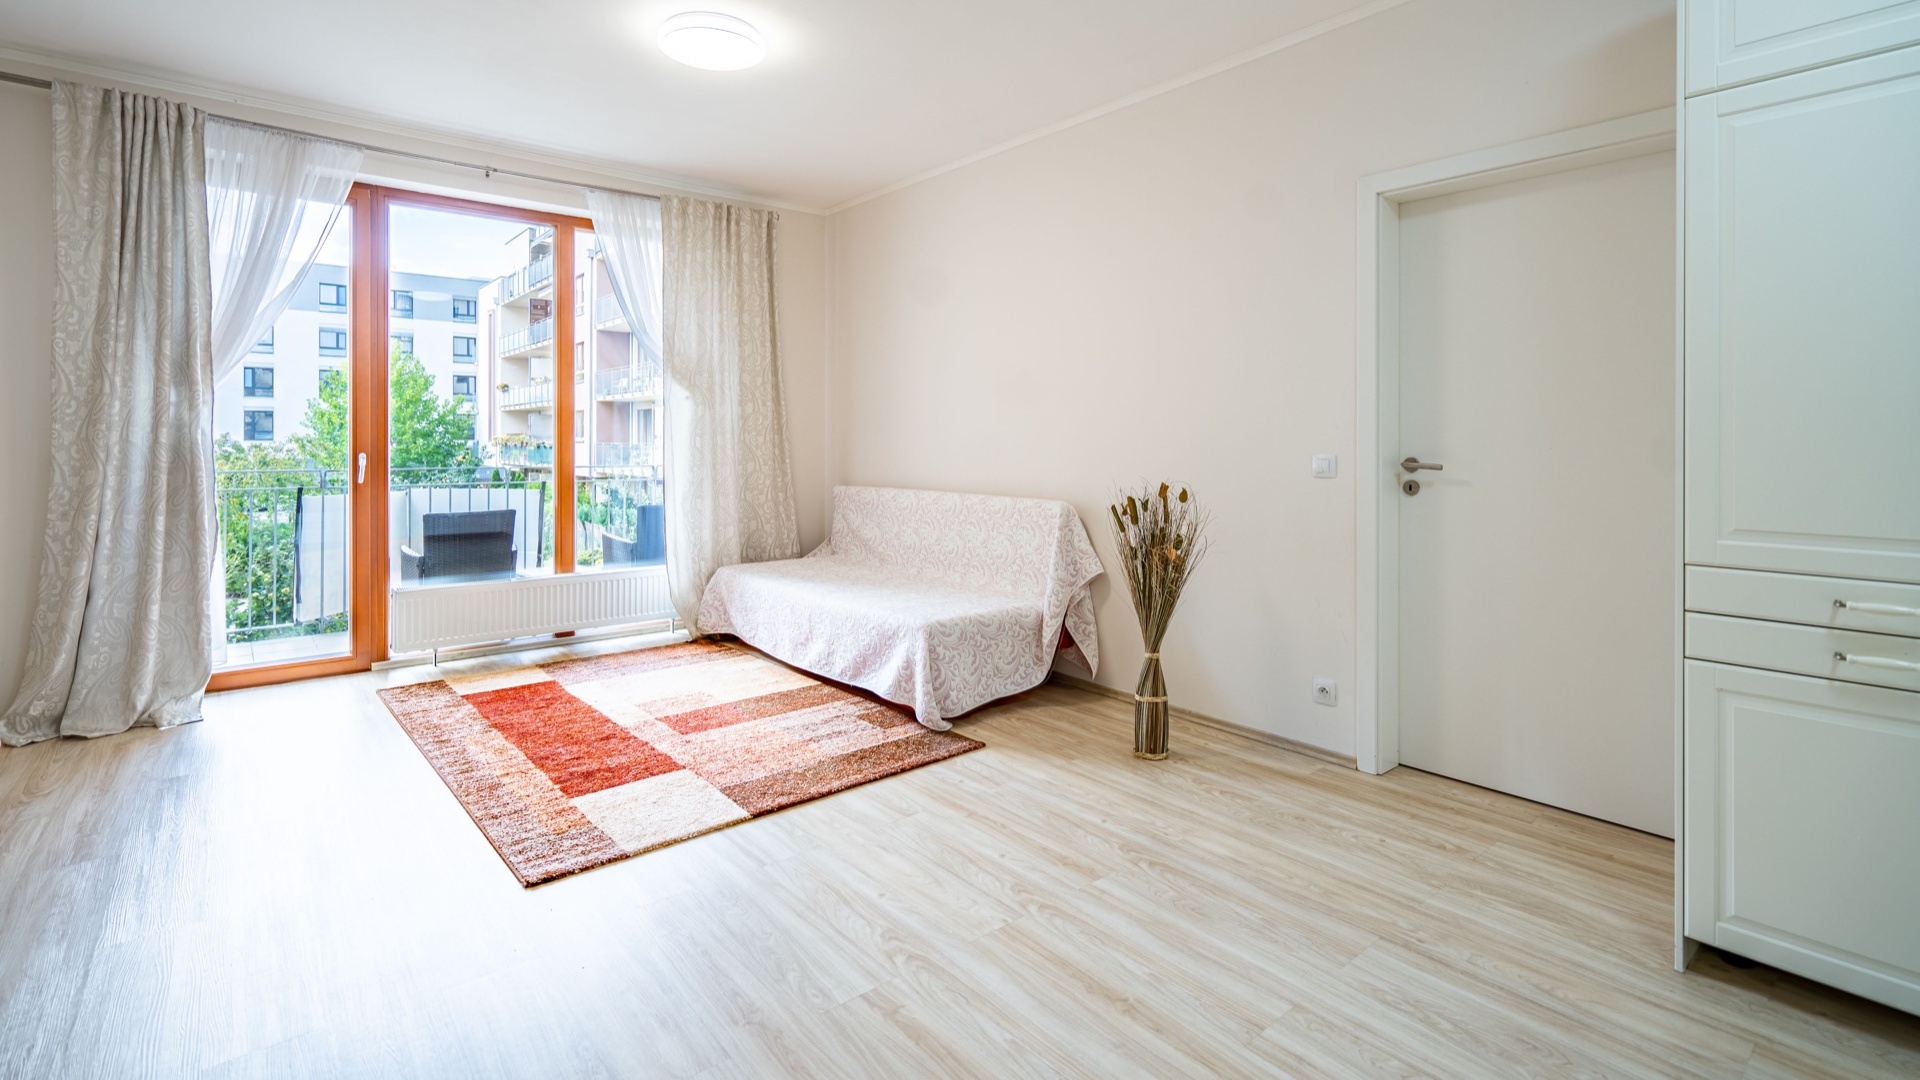 Pronájem bytu 2+kk, 62 m², balkon, garážové stání, sklep, Praha - Stodůlky